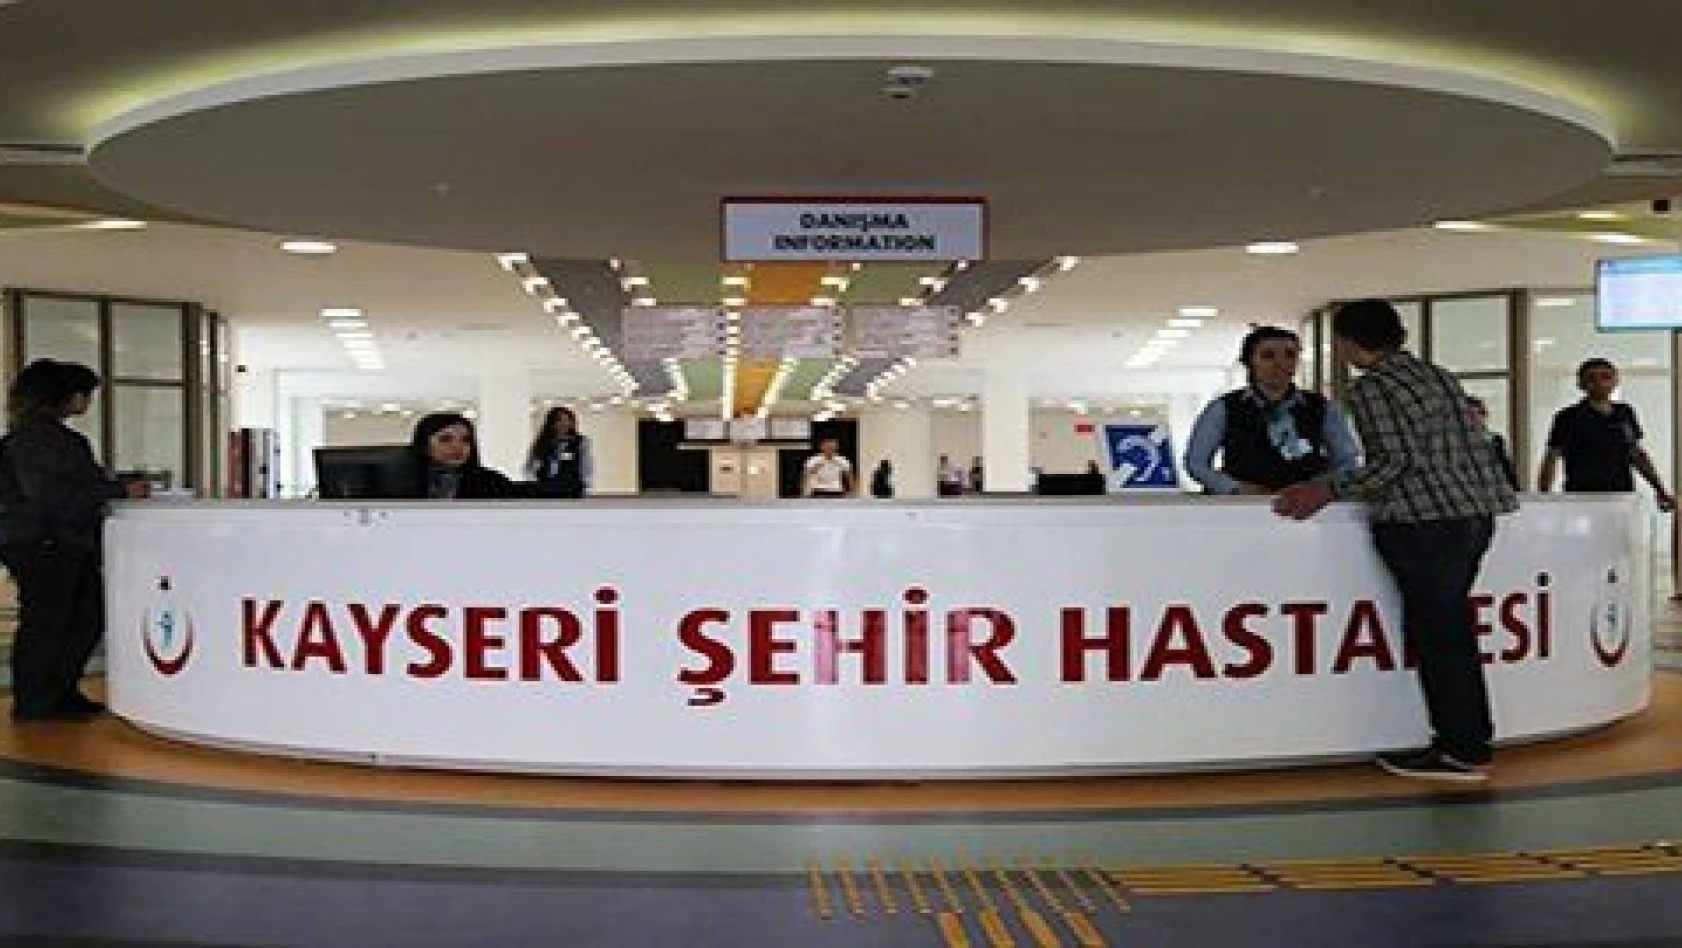 Kayseri Şehir Hastanesi'ne taşınma işlemi 29 Mayıs'ta tamamlanacak